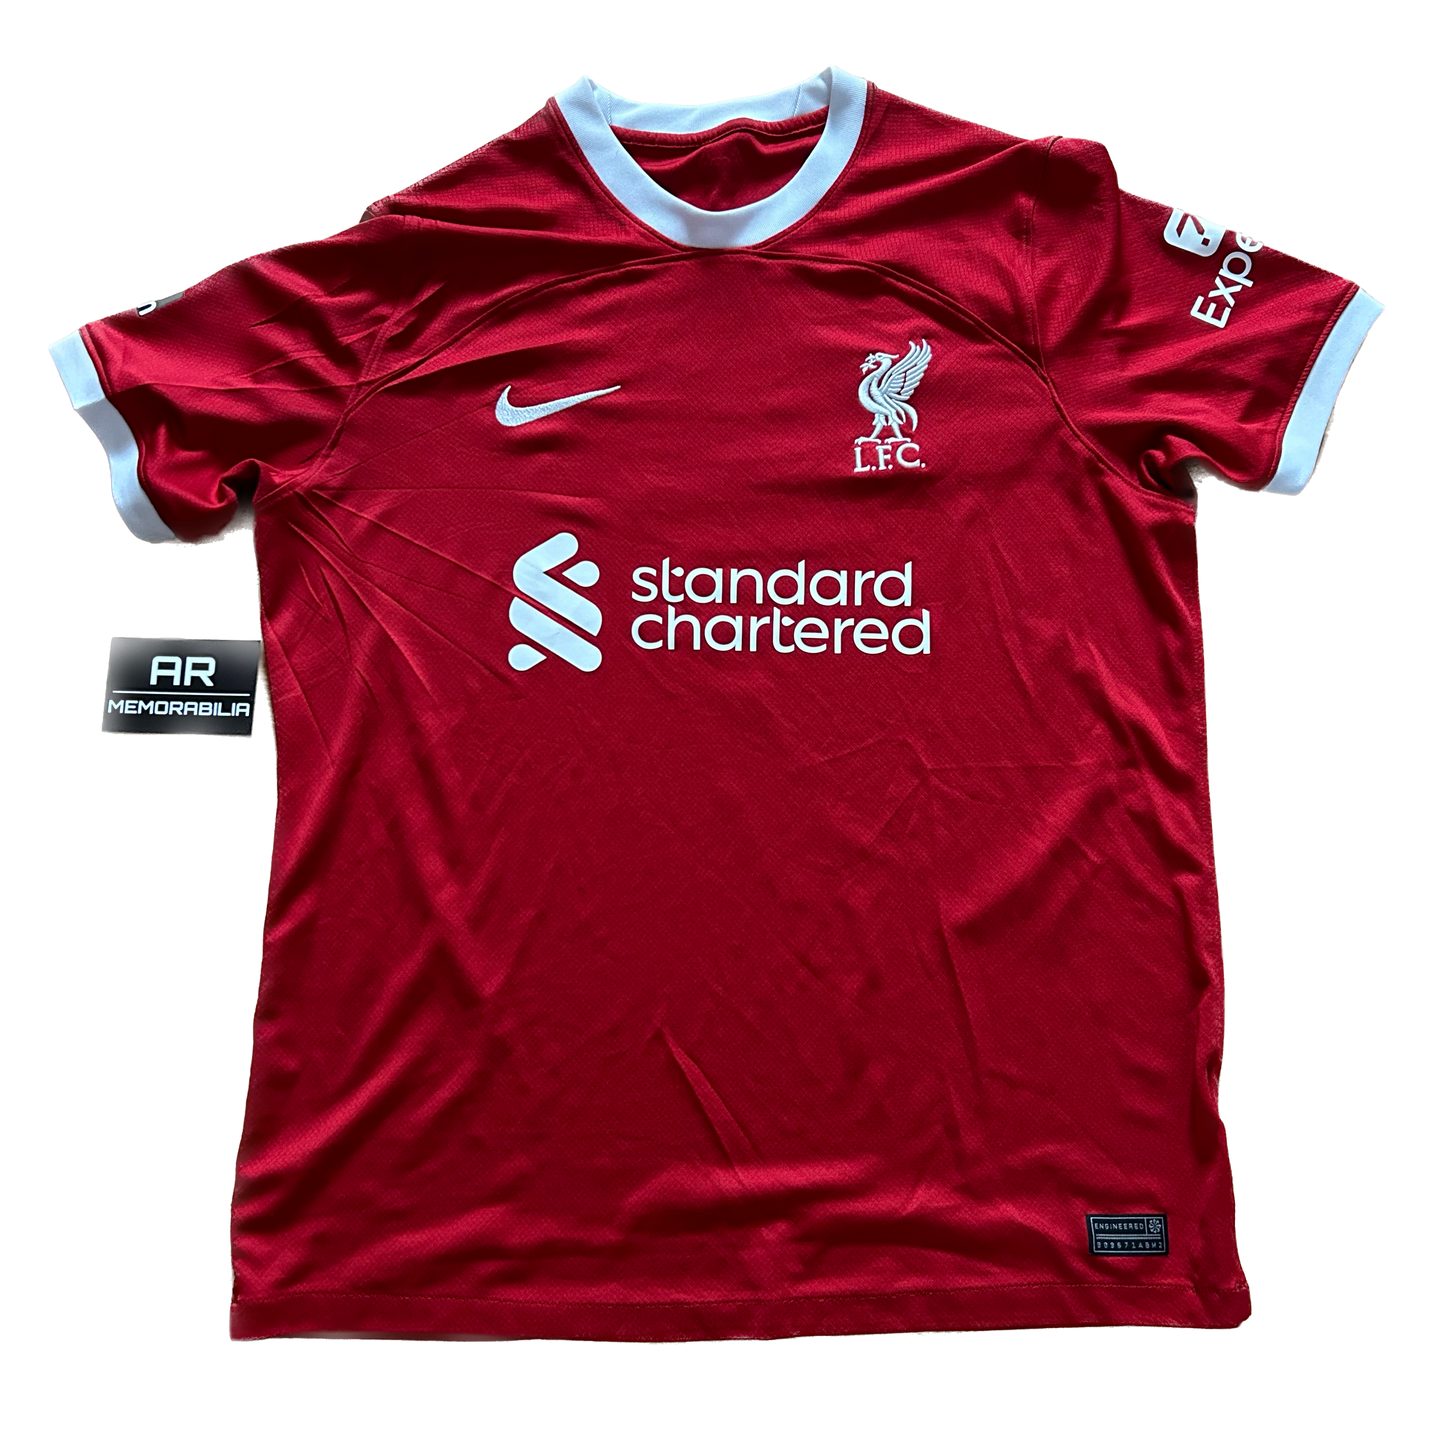 Signed Diogo Jota Liverpool Home Shirt 2023/24